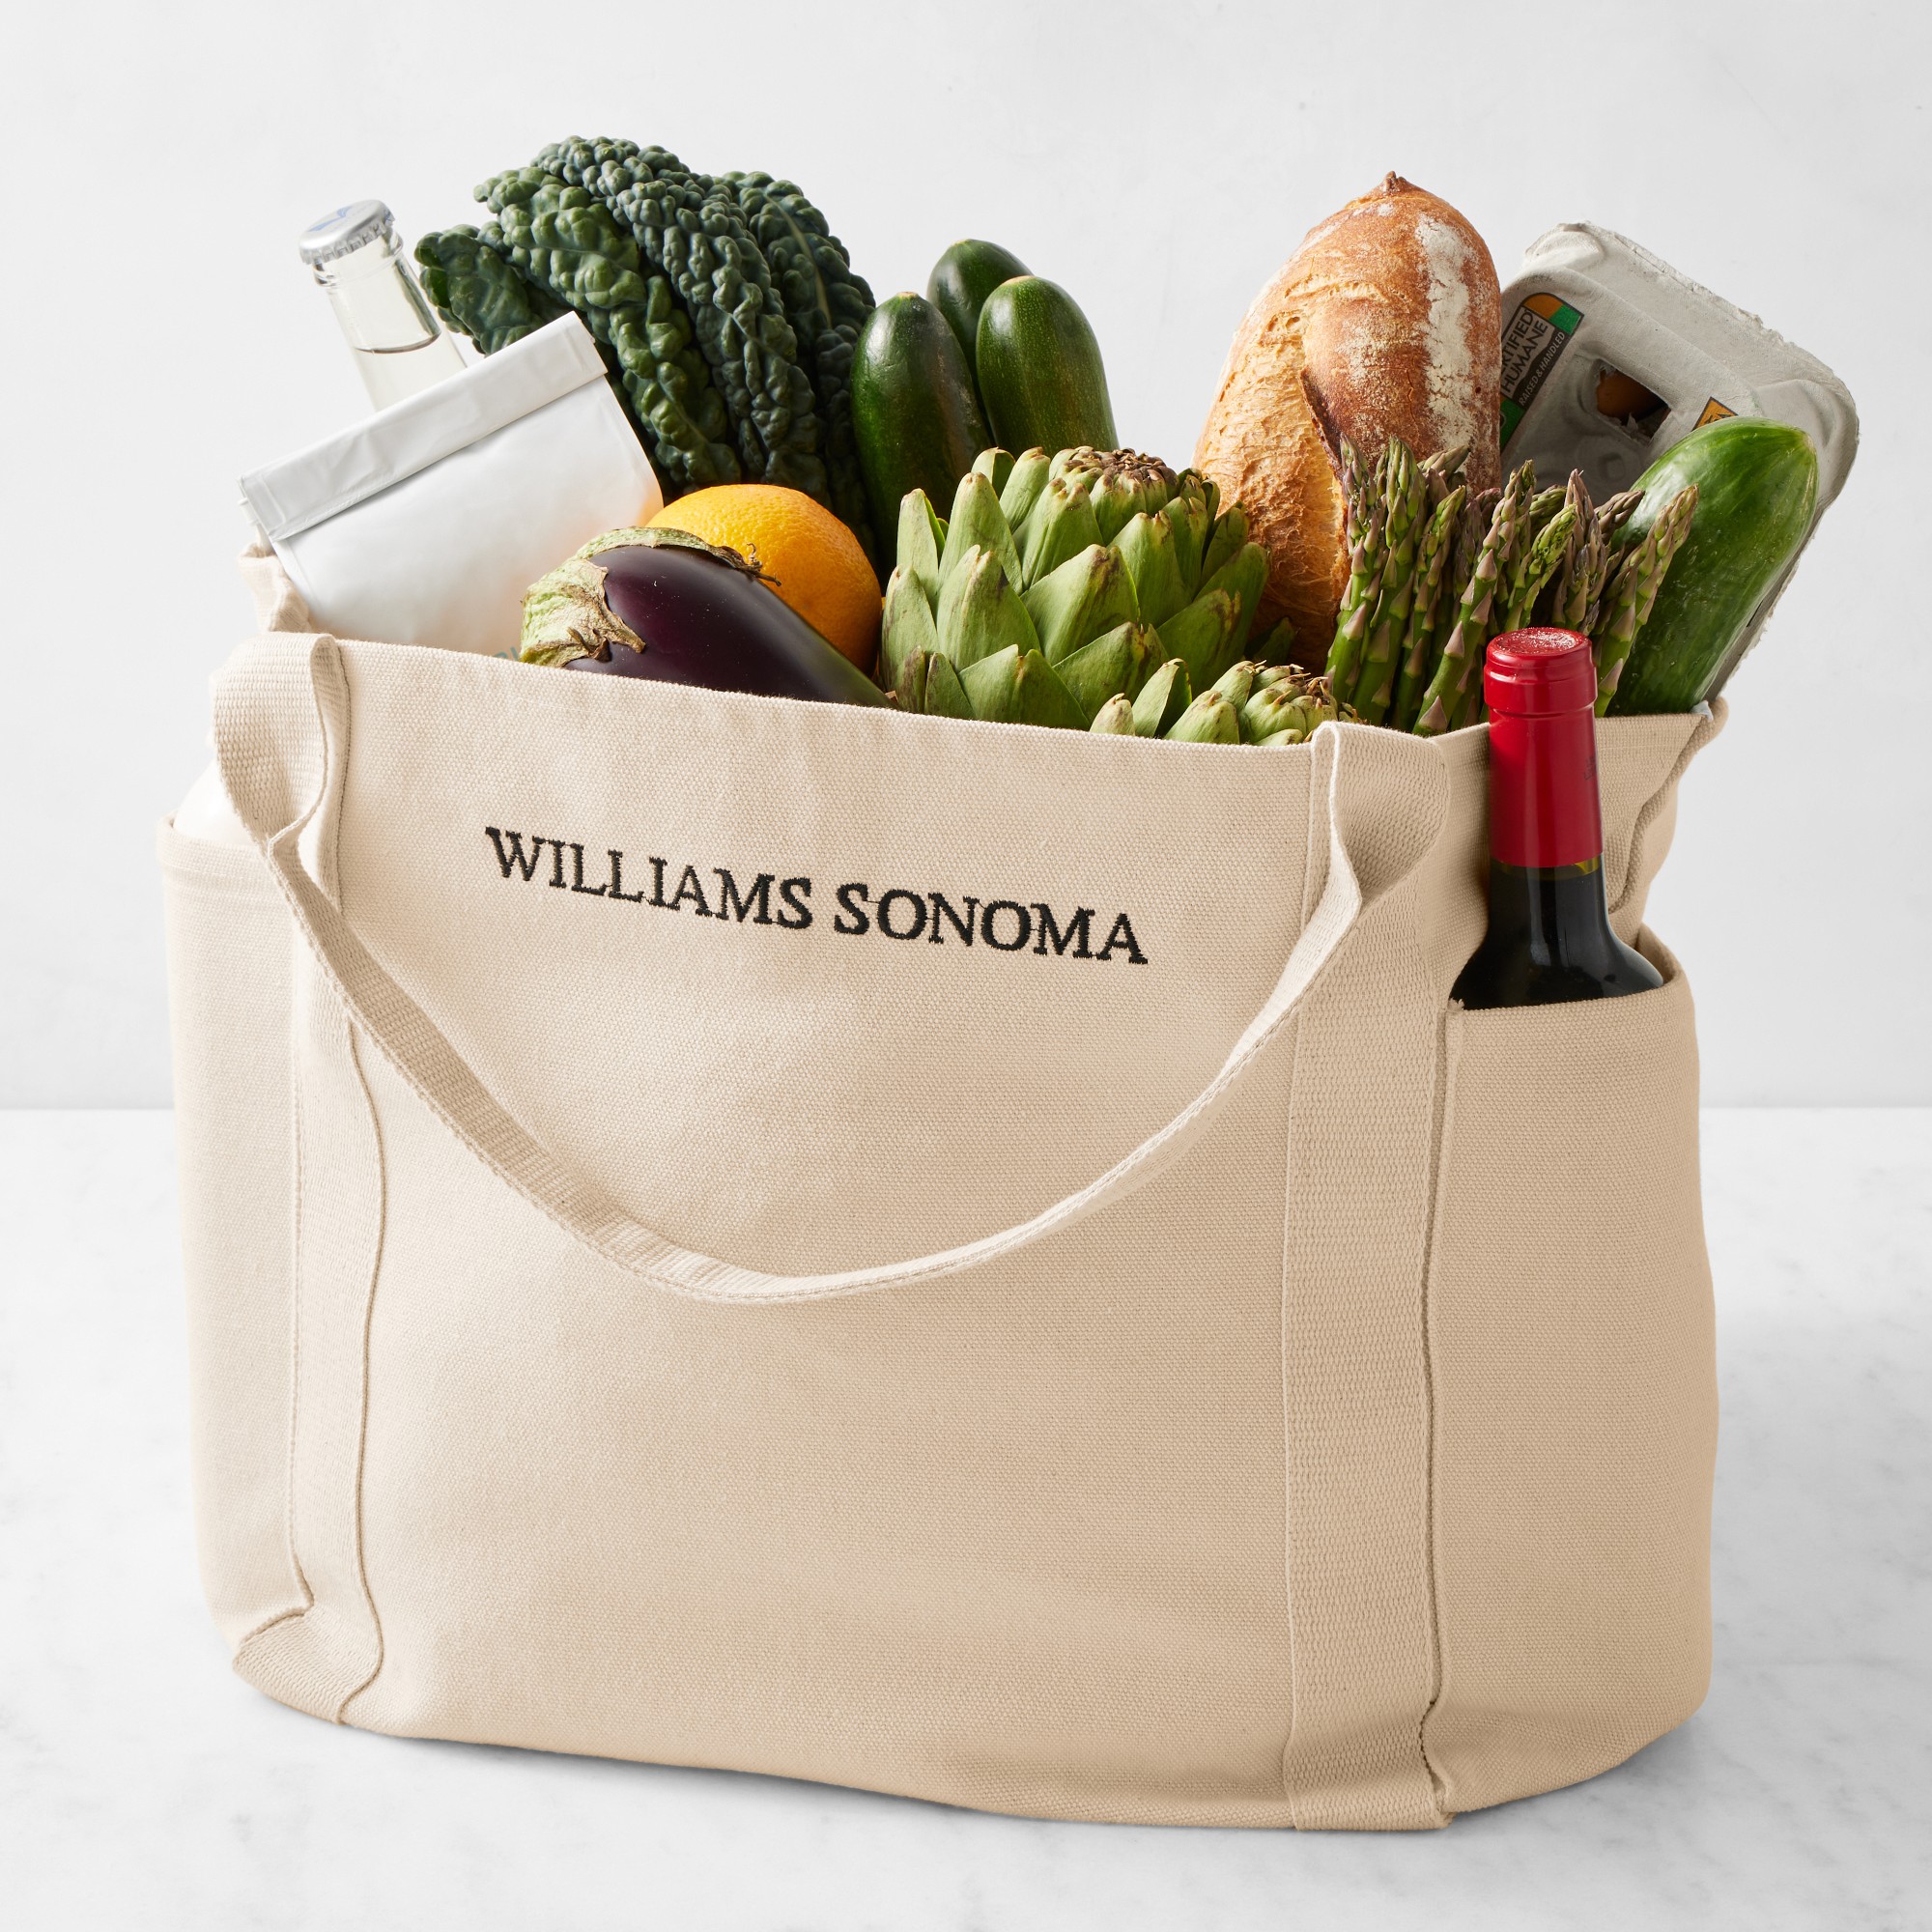 Williams Sonoma Tote Bag